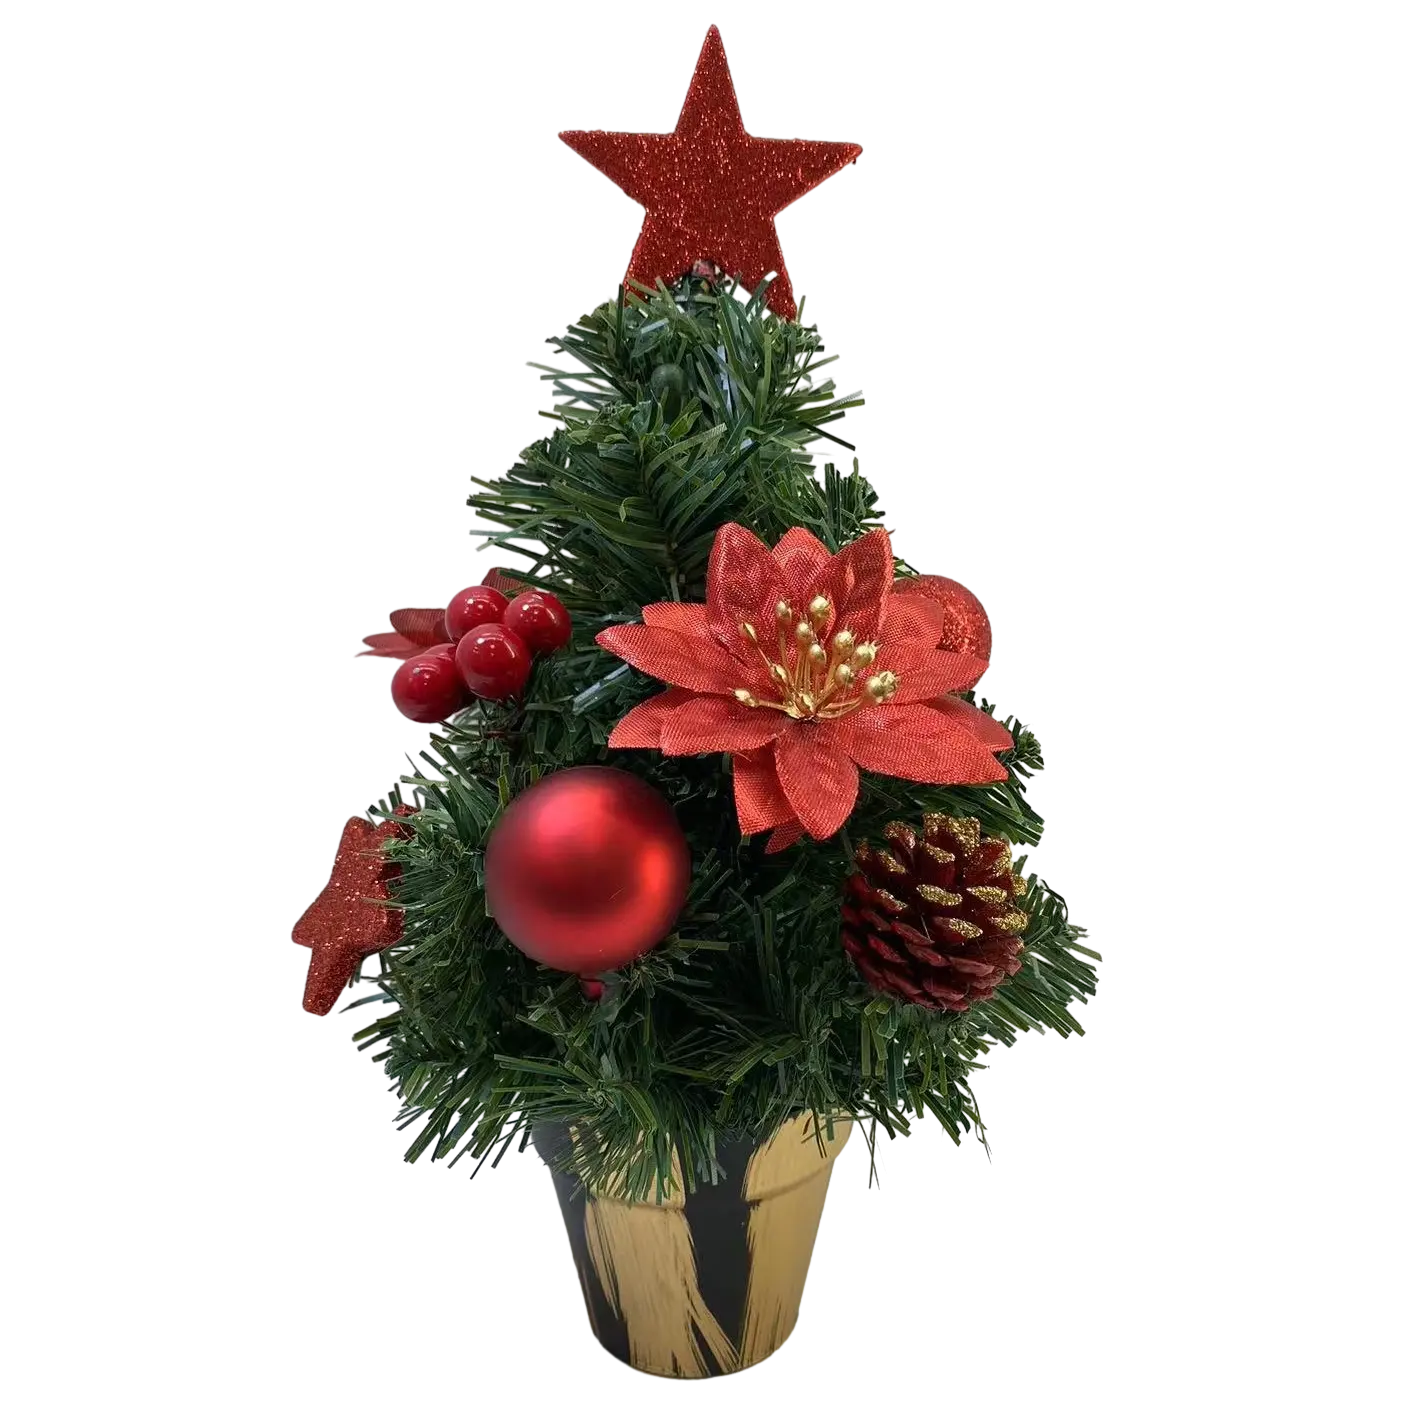 Senmasine dekorasi Natal 30cm 40cm bintang puncak buah beri merah Poinsettia Glitter Pinecones atas meja pohon Natal